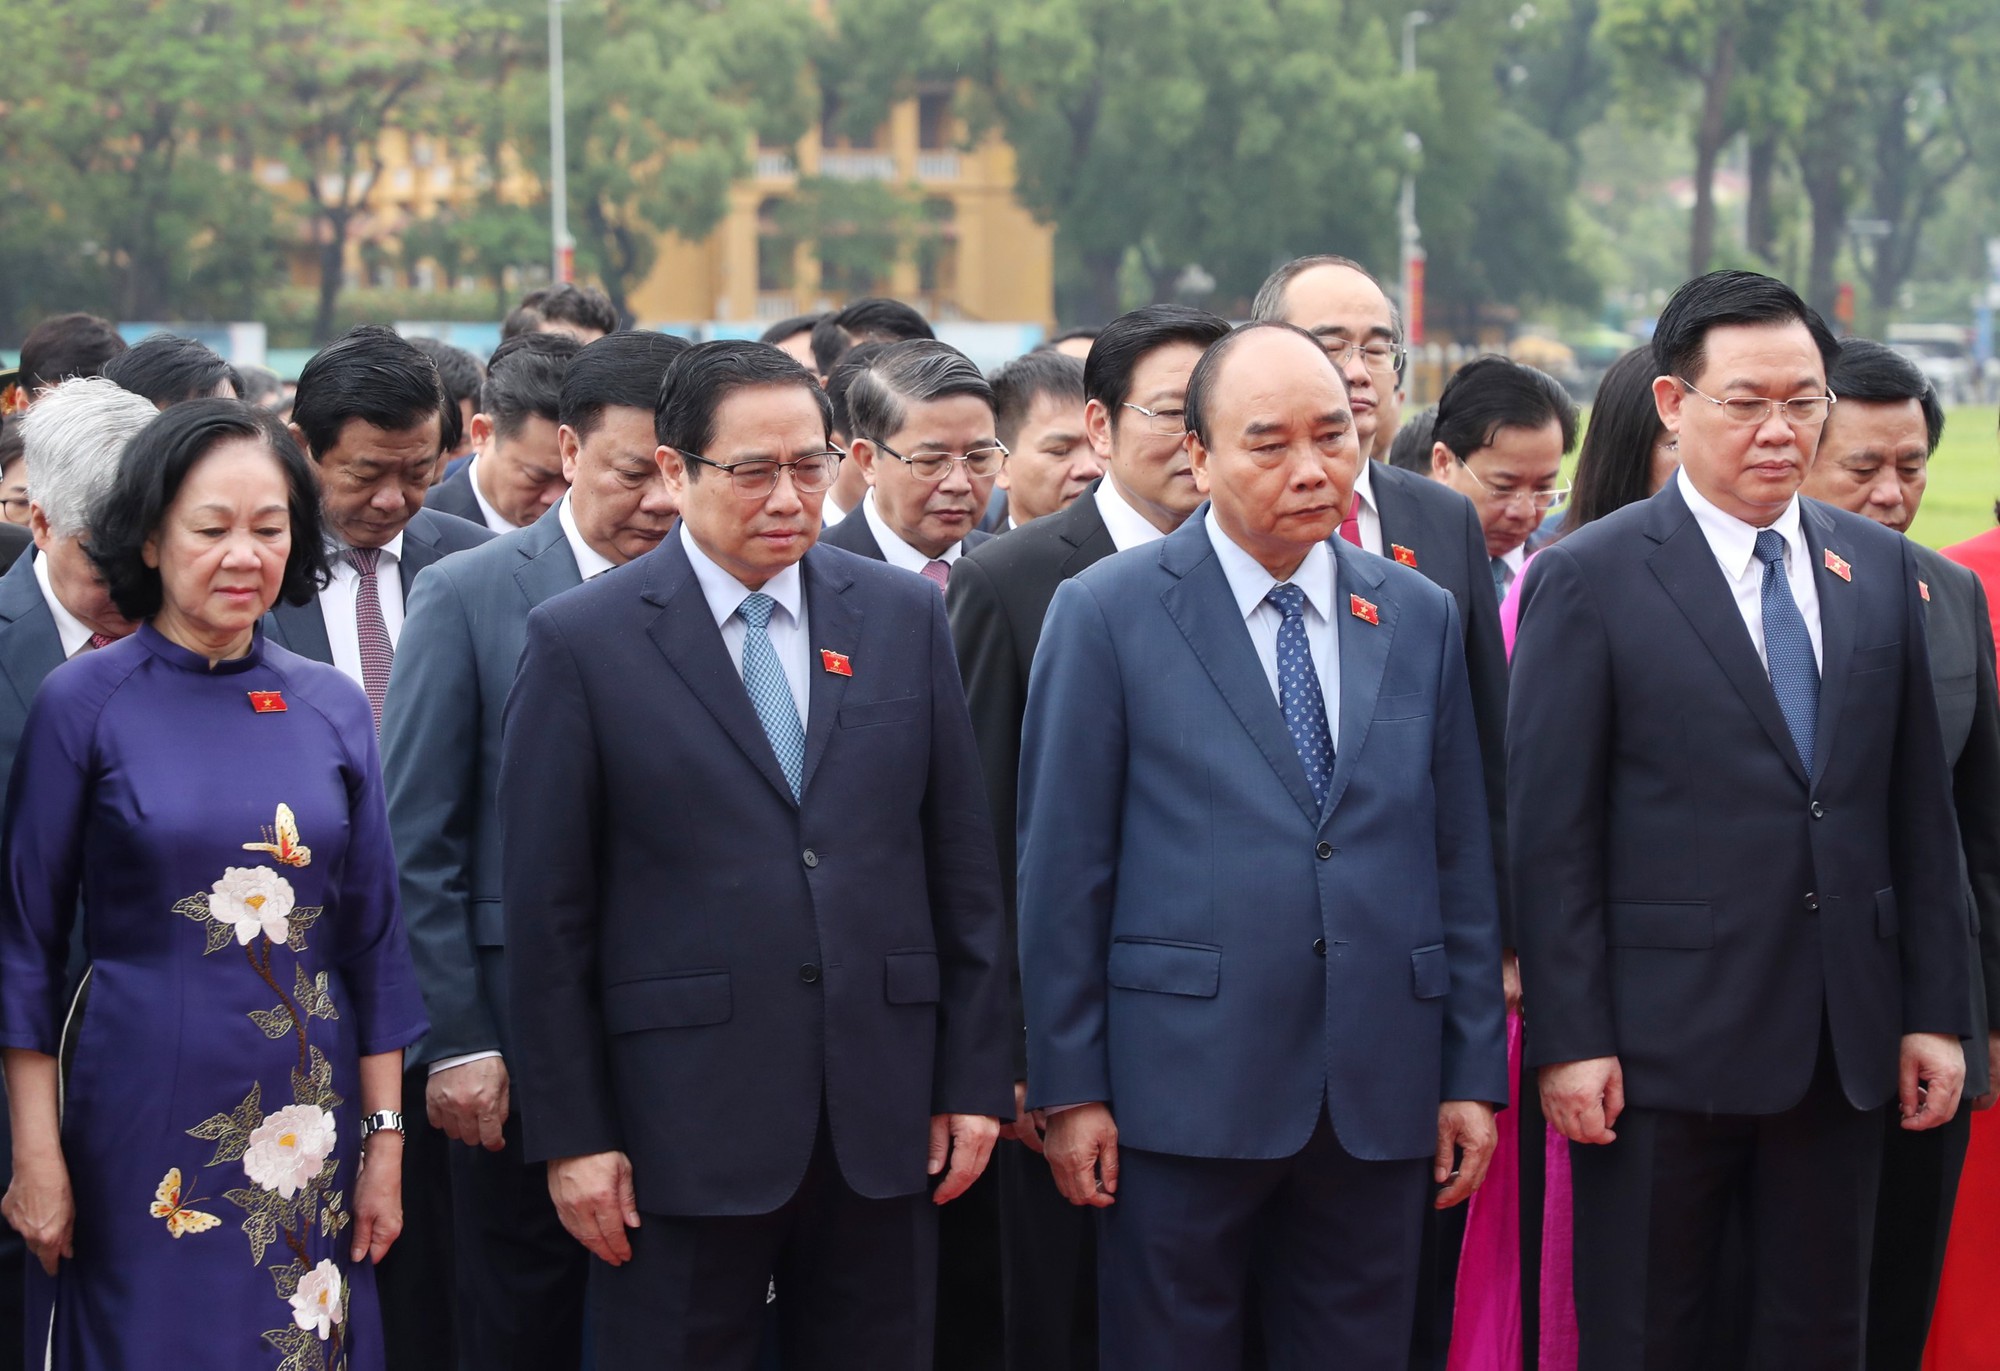 Trong tiếng quân nhạc trang nghiêm, các đồng chí lãnh đạo Đảng, Nhà nước, các đại biểu Quốc hội kính cẩn nghiêng mình, bày tỏ lòng thành kính trước anh linh Chủ tịch Hồ Chí Minh.